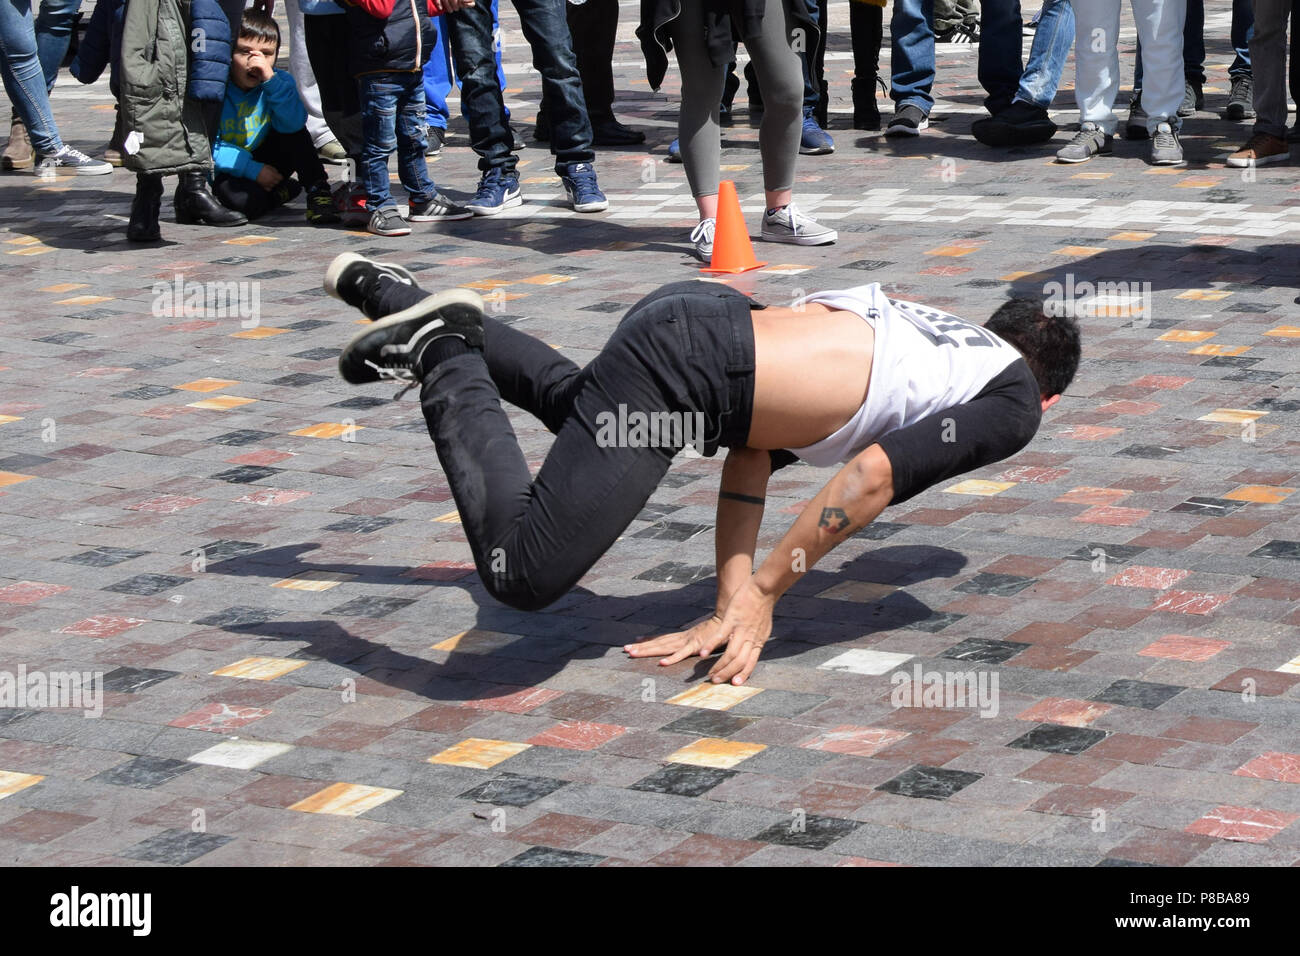 Atene, Grecia - Aprile 1, 2018: giovane breakdance nella pubblica piazza. Strada urbana danza cultura giovanile. Foto Stock